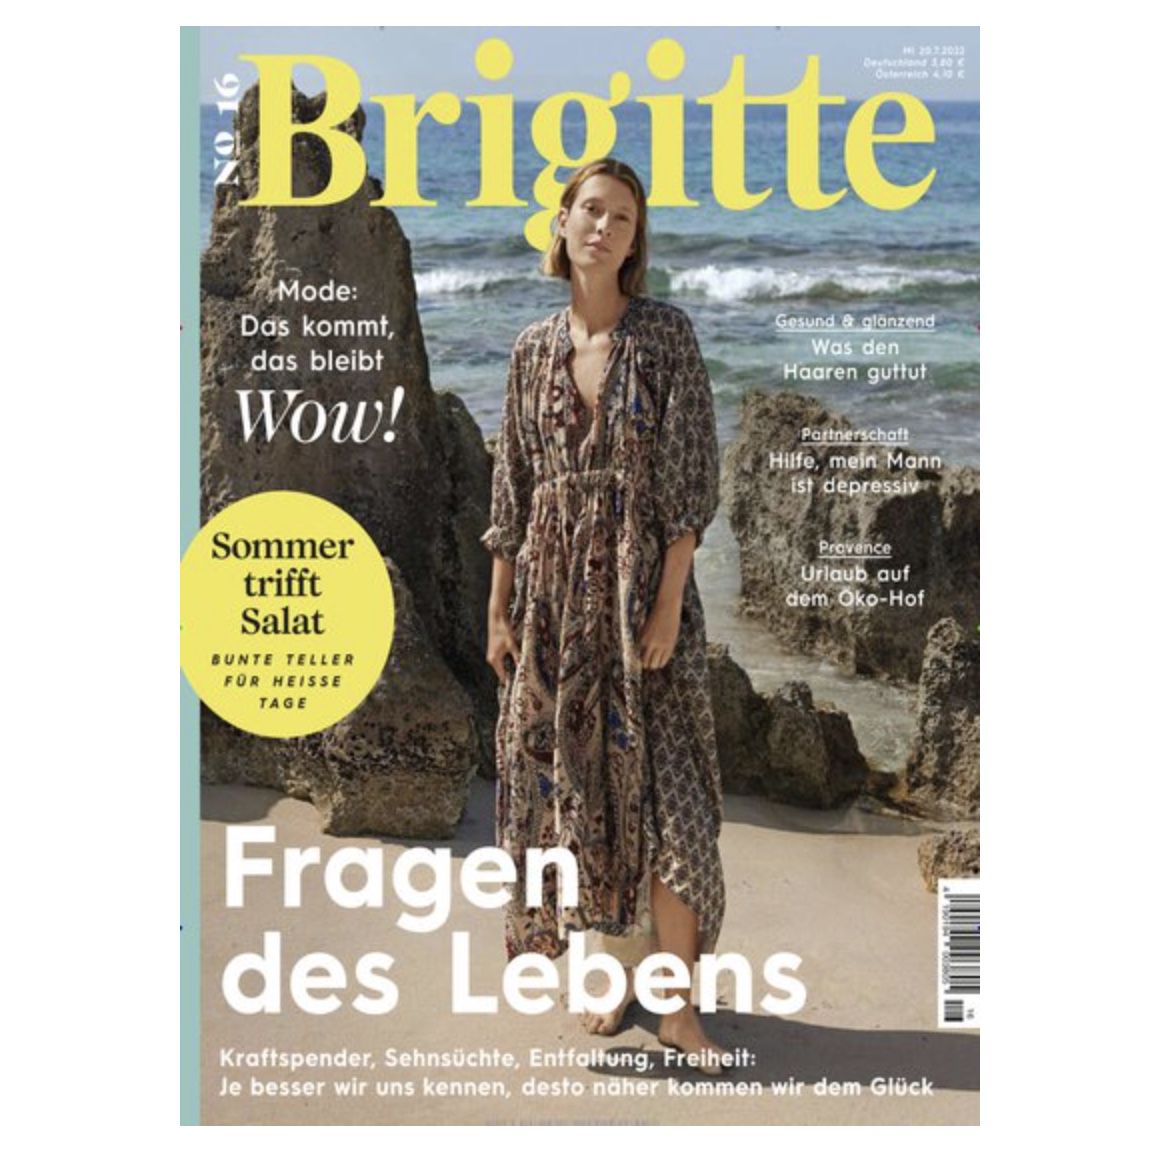 27 Ausgaben Brigitte für 97,60€ + Prämie: bis zu 100€ Gutschein